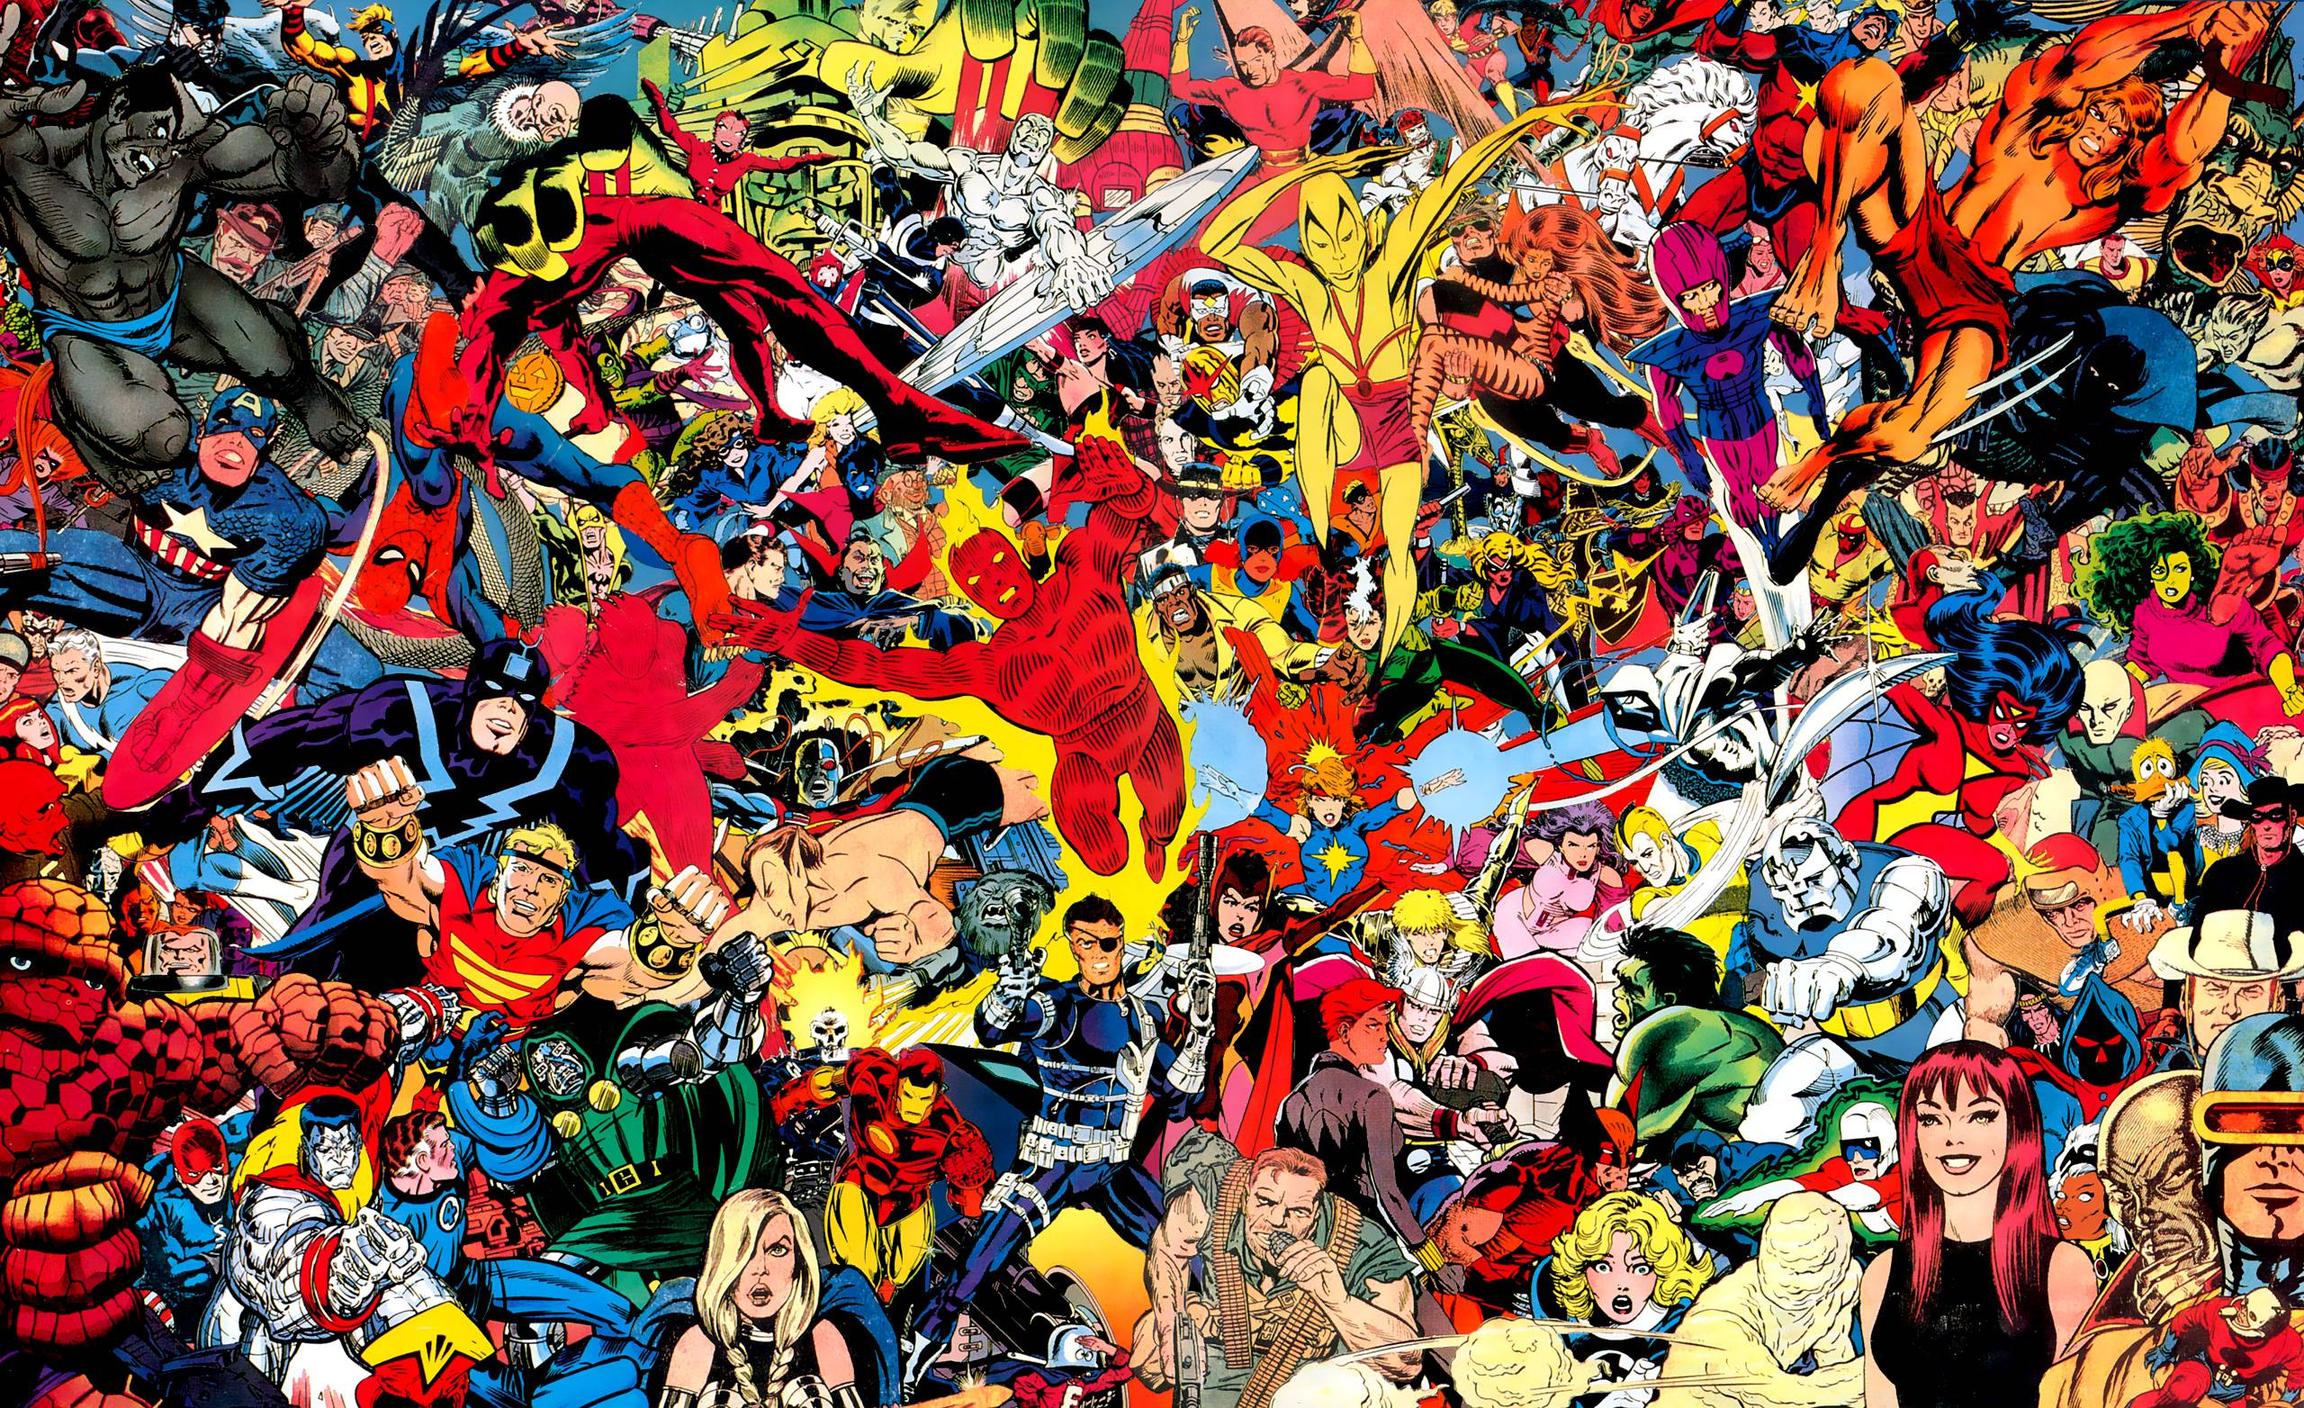 Vũ trụ Marvel là một thế giới đầy màu sắc và phiêu lưu với những siêu anh hùng của Marvel. Với những chuyến phiêu lưu đầy mạo hiểm và cảm xúc, vũ trụ Marvel luôn làm say mê trái tim của các fan. Hãy xem những hình ảnh liên quan đến Vũ trụ Marvel để được trải nghiệm những cuộc phiêu lưu đầy hấp dẫn. 